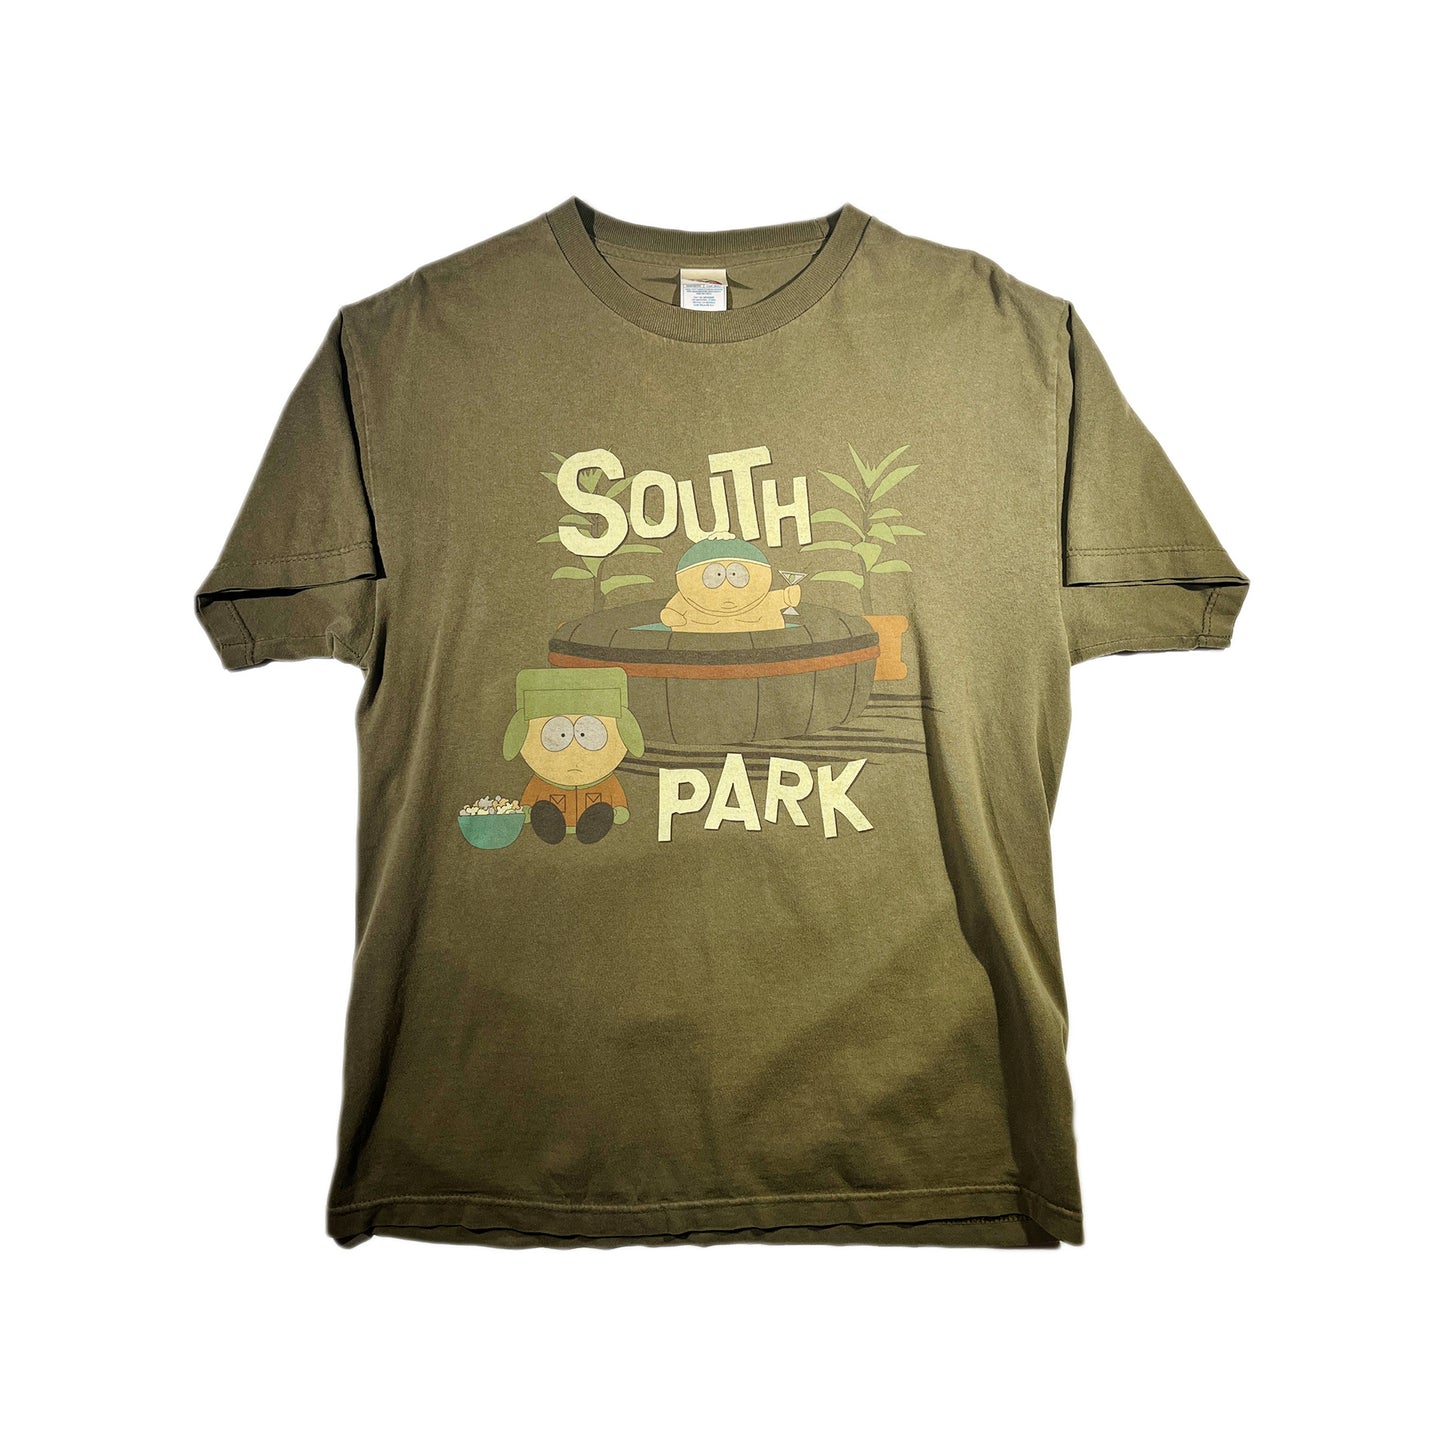 Vintage South Park T-Shirt